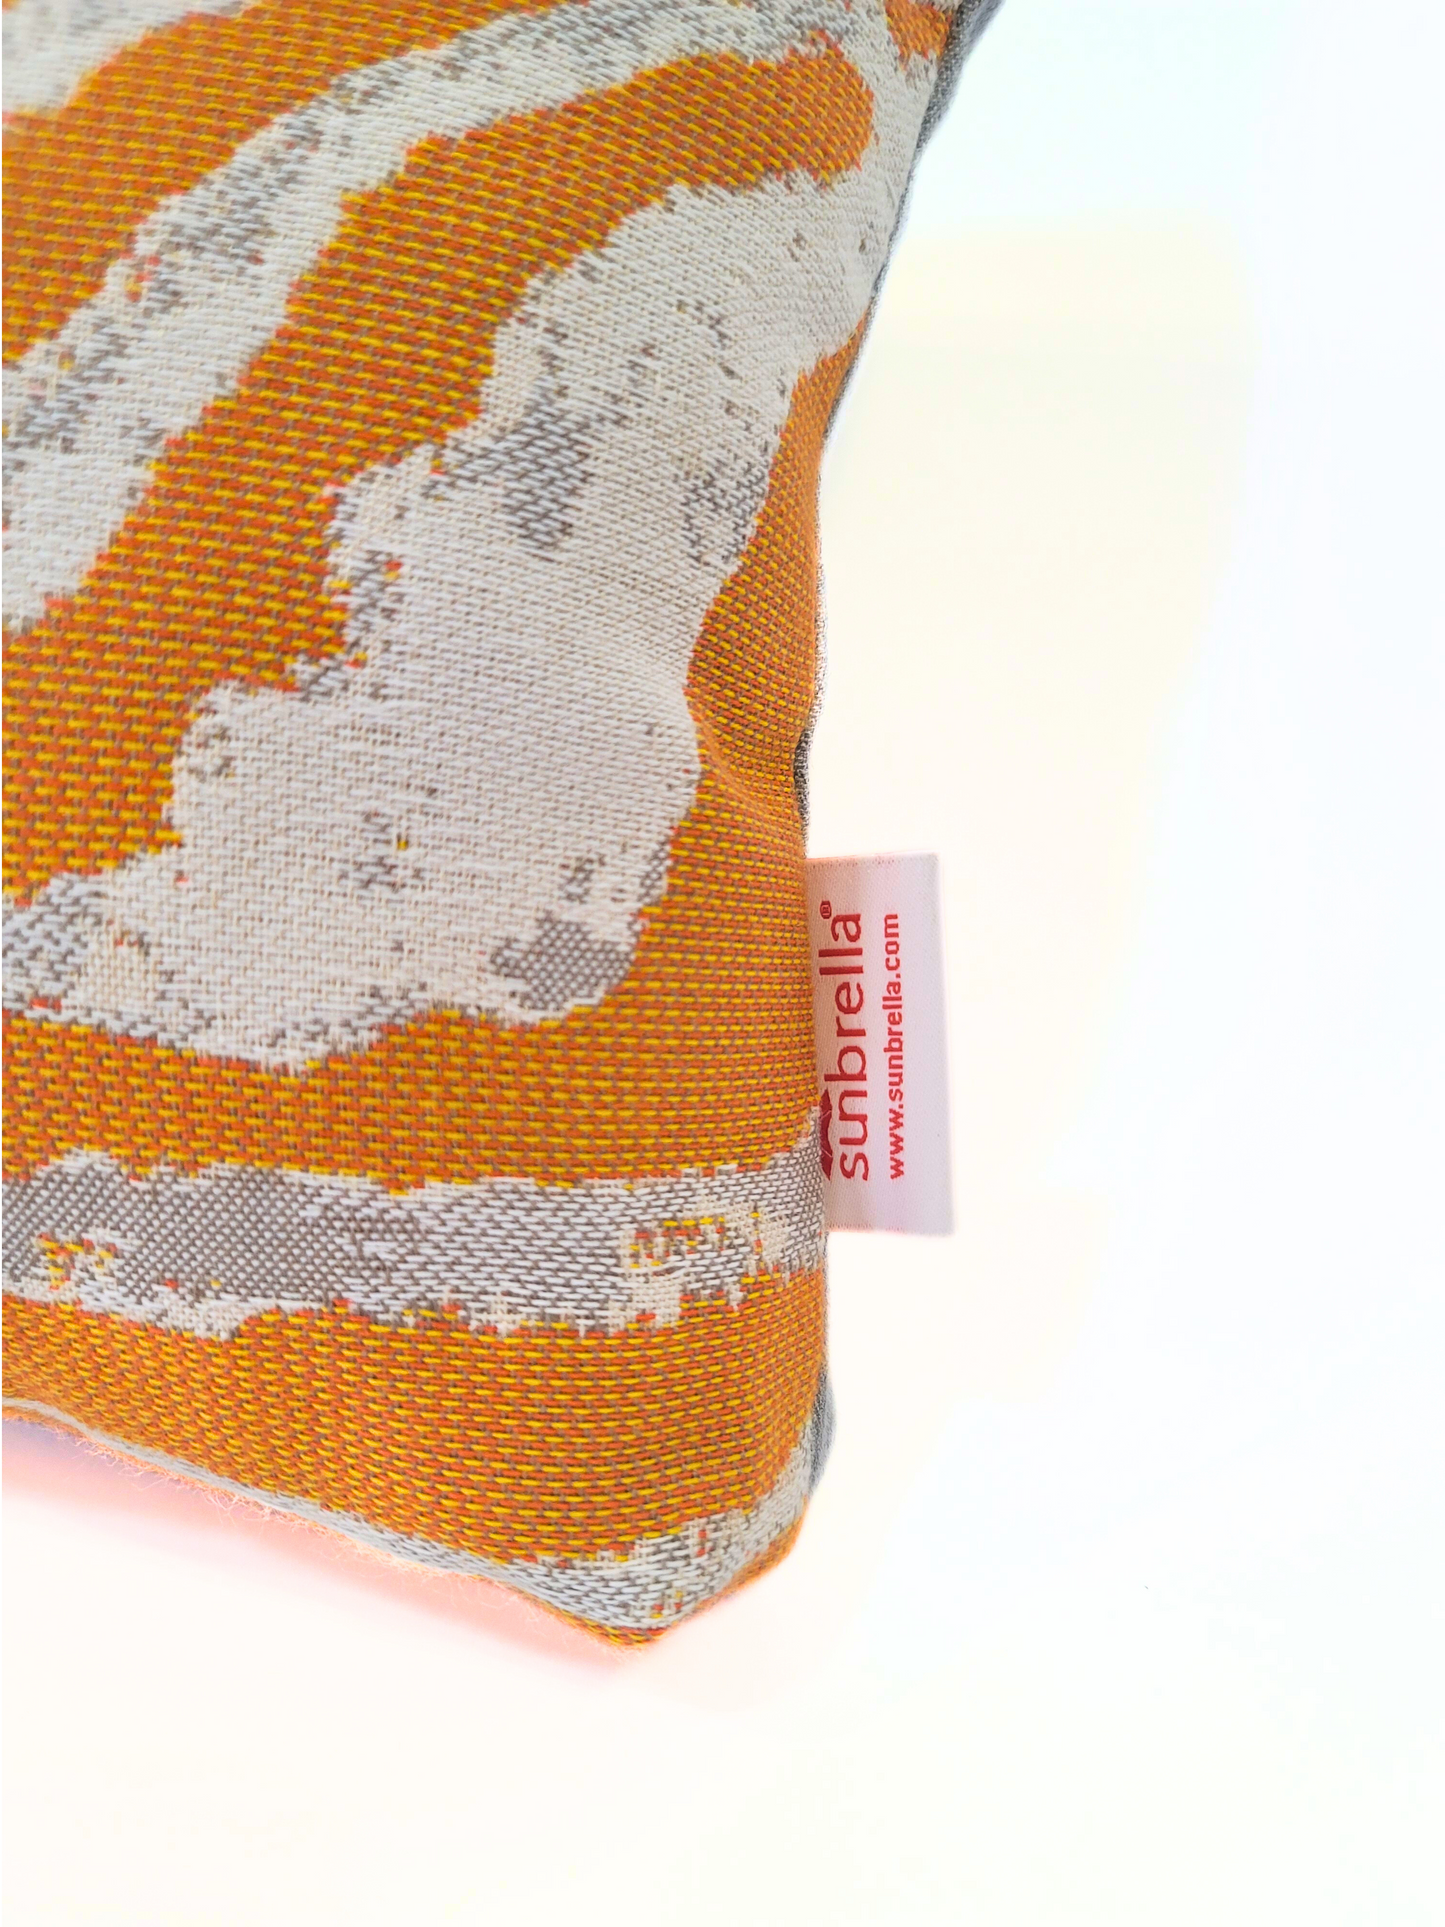 Premium Sunbrella Reversible "Tangerine Safari/Canvas Granite" Indoor/Outdoor Toss Pillow Cover